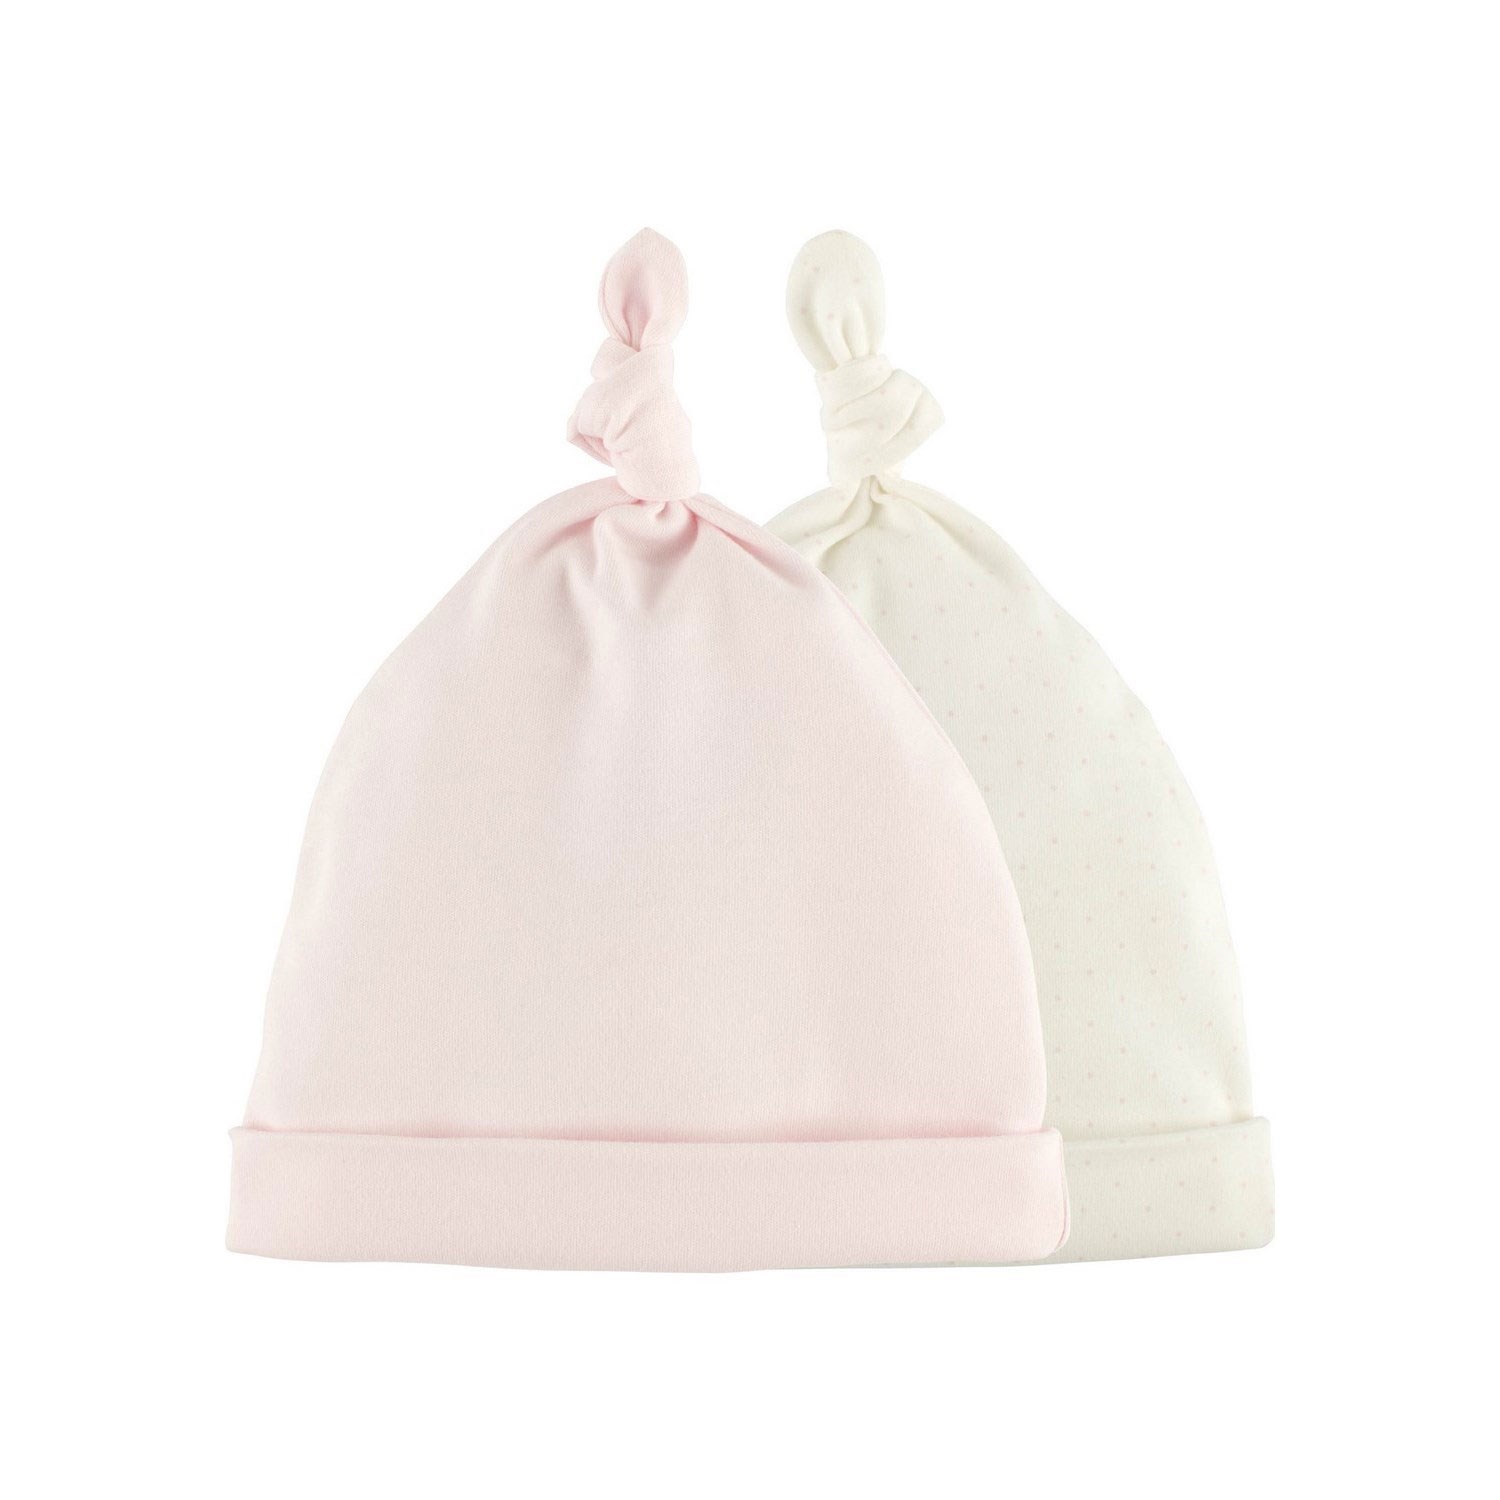 İdil Baby 2'li Bebek Şapkası 15448 Pembe